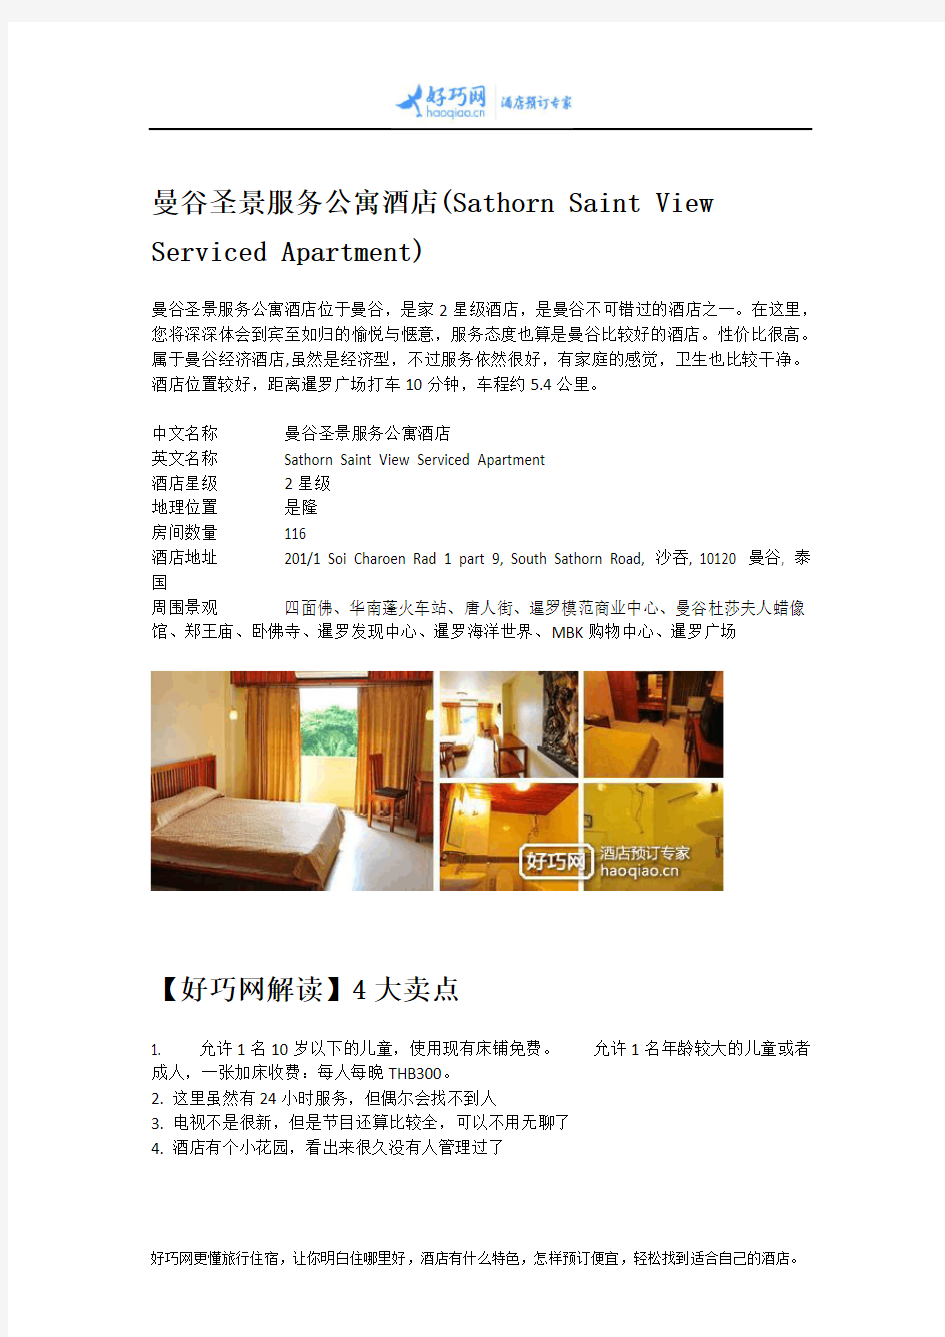 曼谷圣景服务公寓酒店(Sathorn Saint View Serviced Apartment)